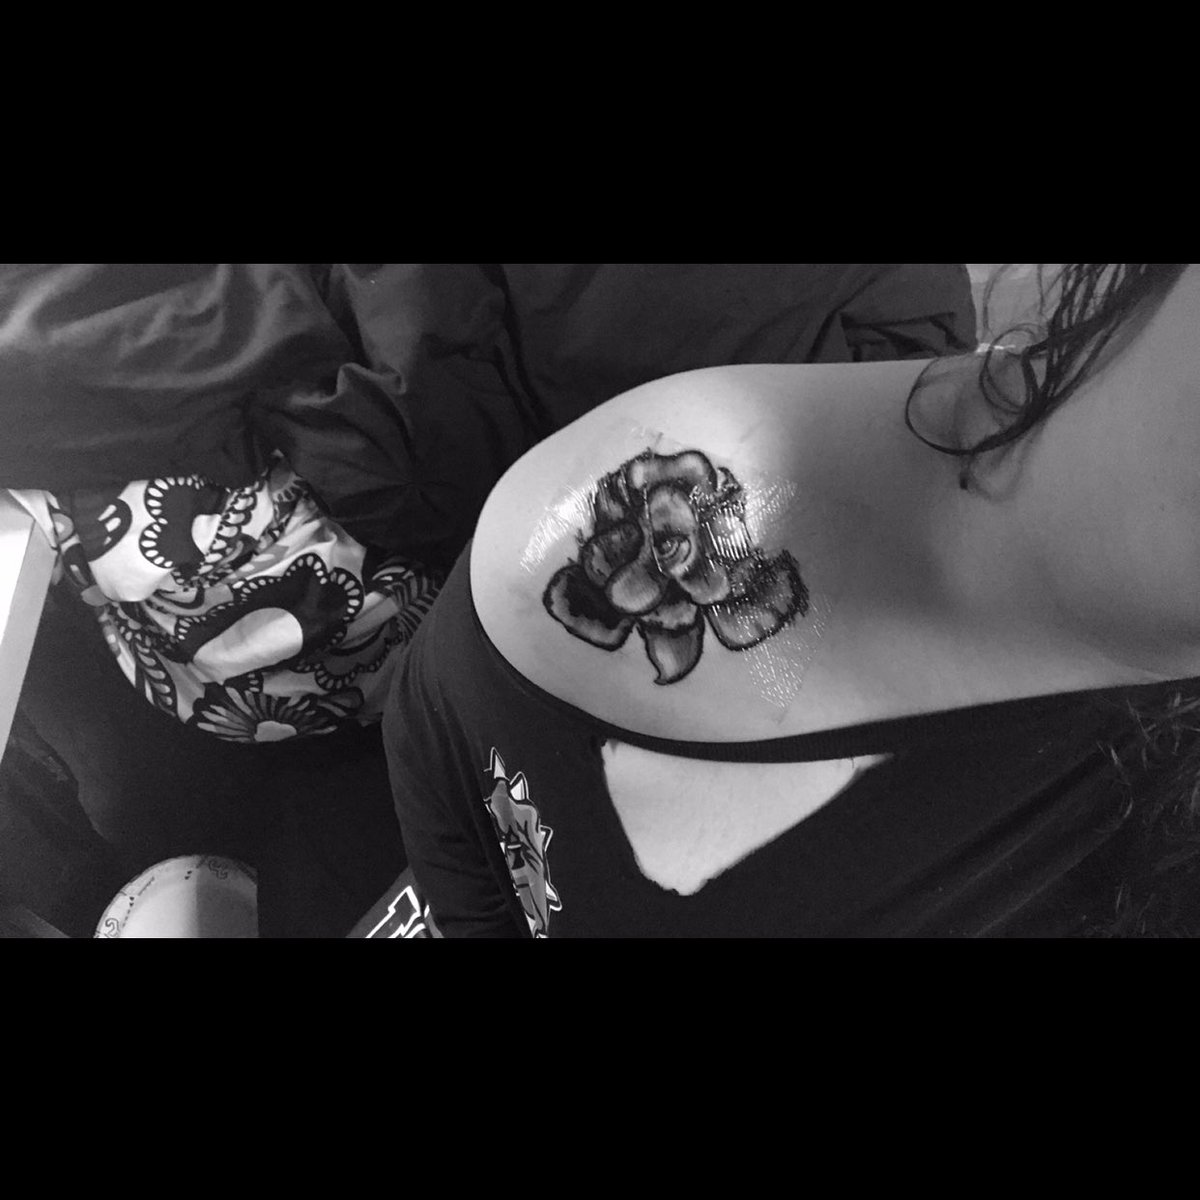 I also centered my shoulder bouquet tattoo around the smeraldo flower 